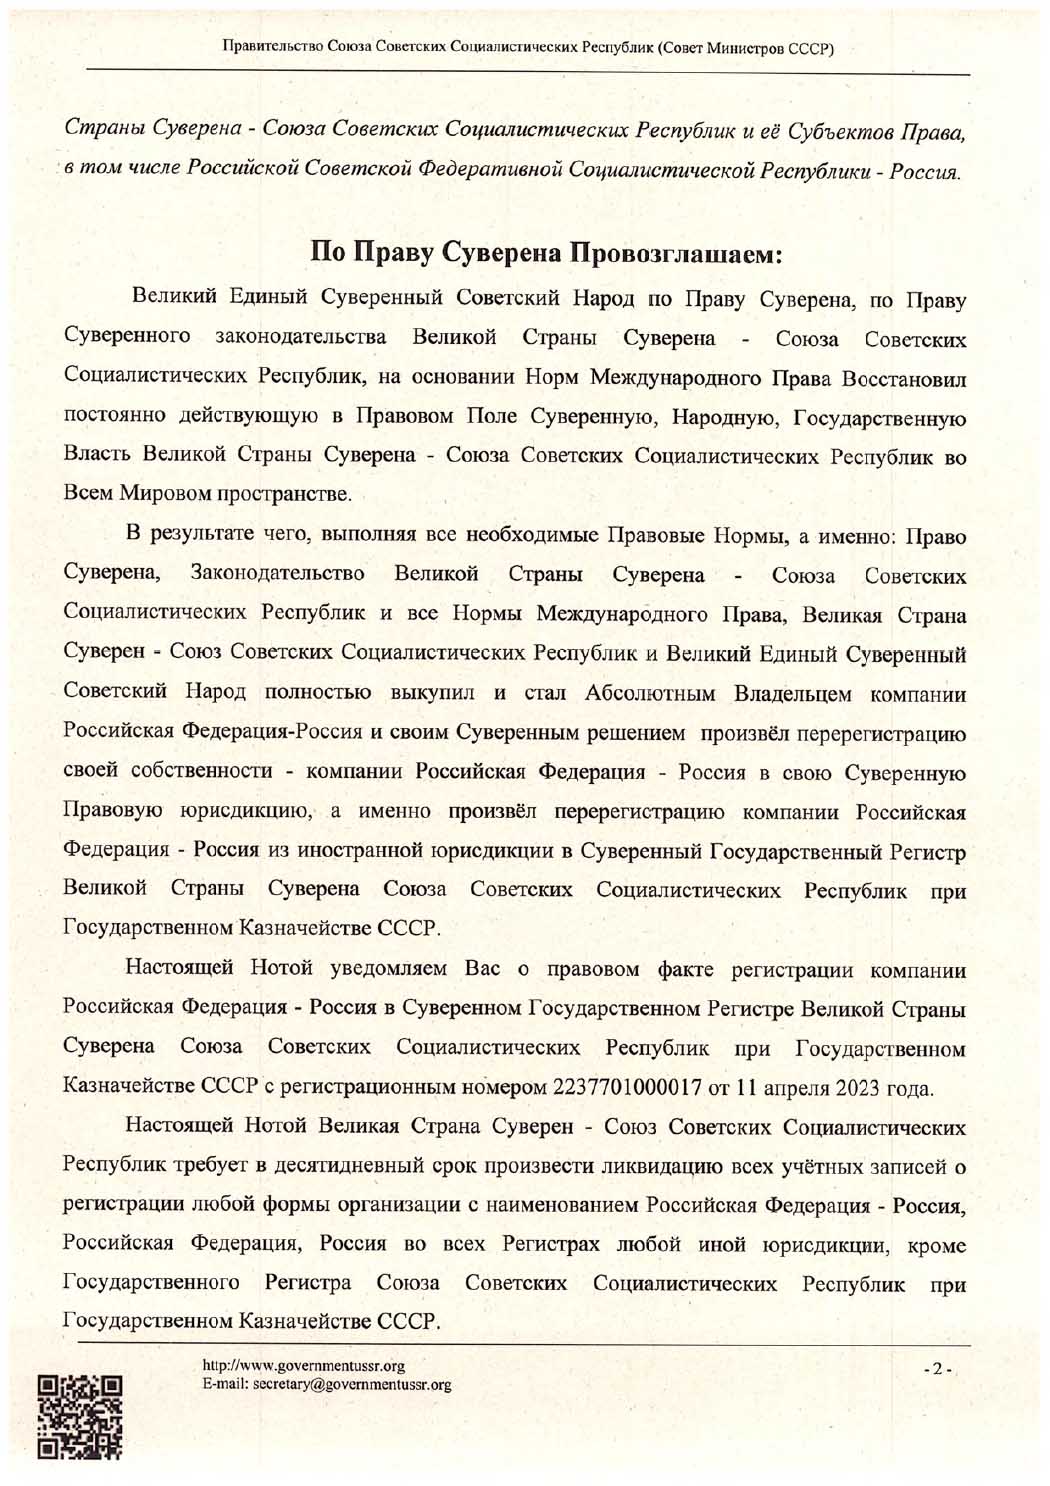 Нота Совета Министров Союза Советских Социалистических Республик. Всем Субъектам Права. 13 апреля 2023 года.